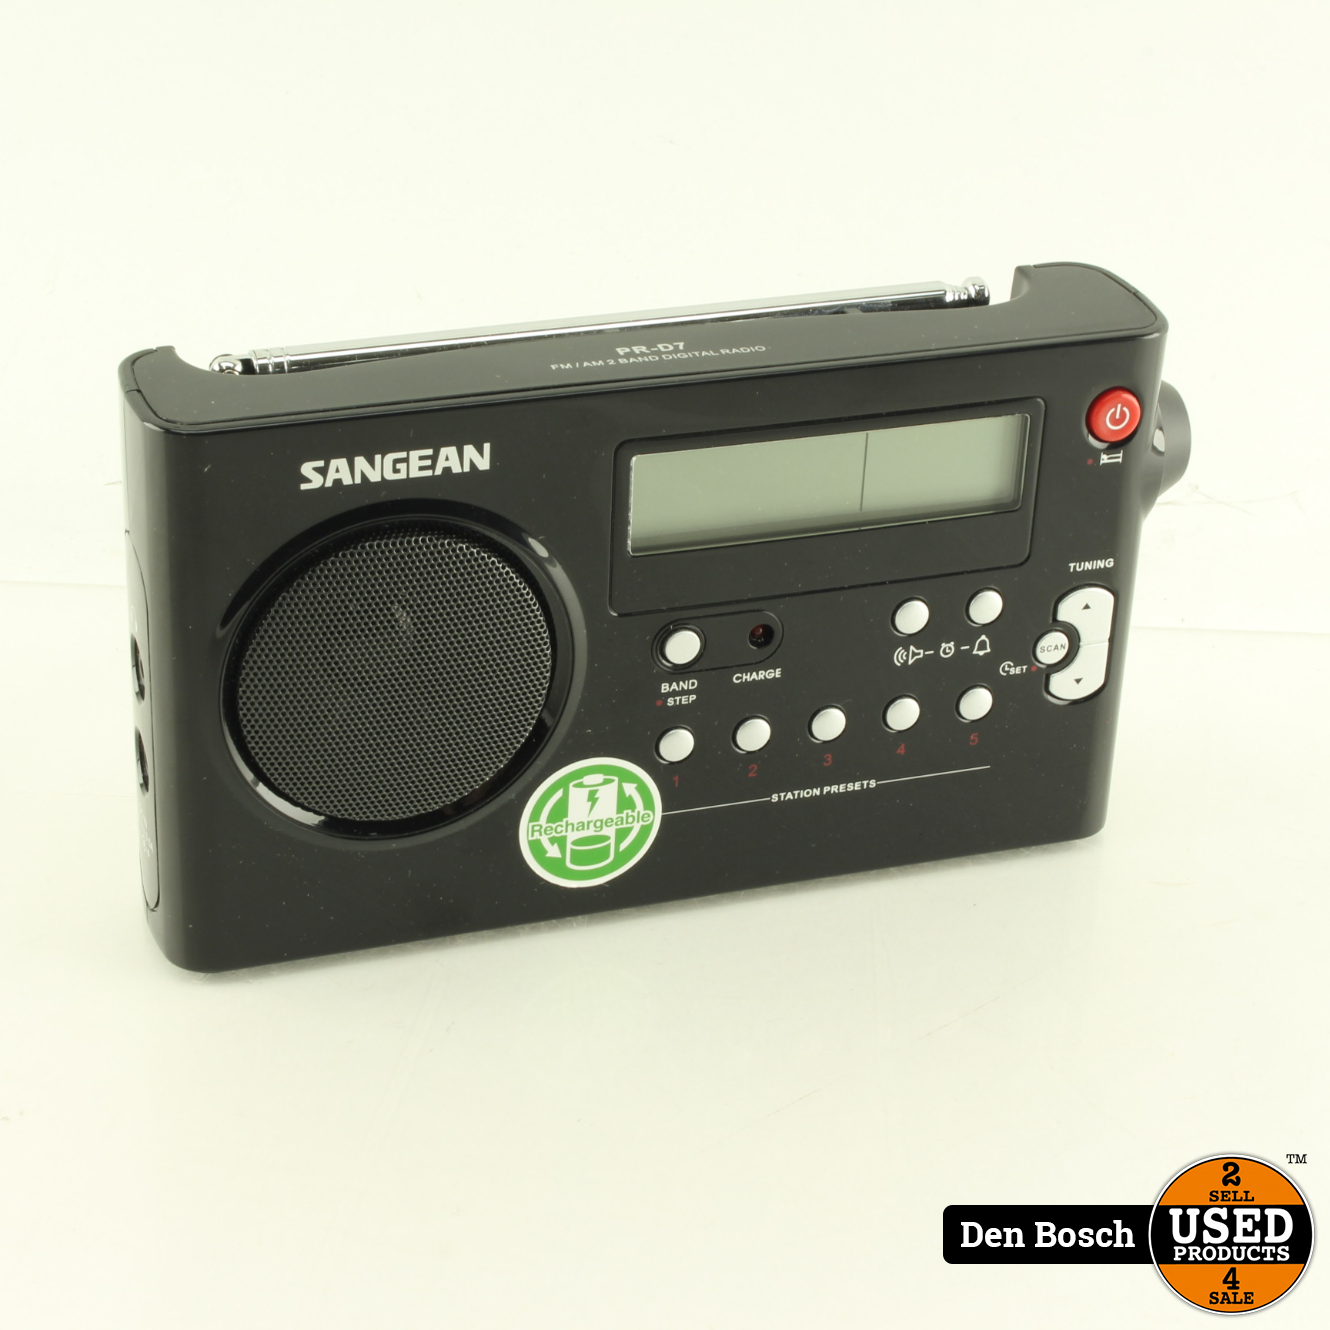 Voorbijganger koel Steil Sangean PR-D7 Portable radio FM, AM - Used Products Den Bosch